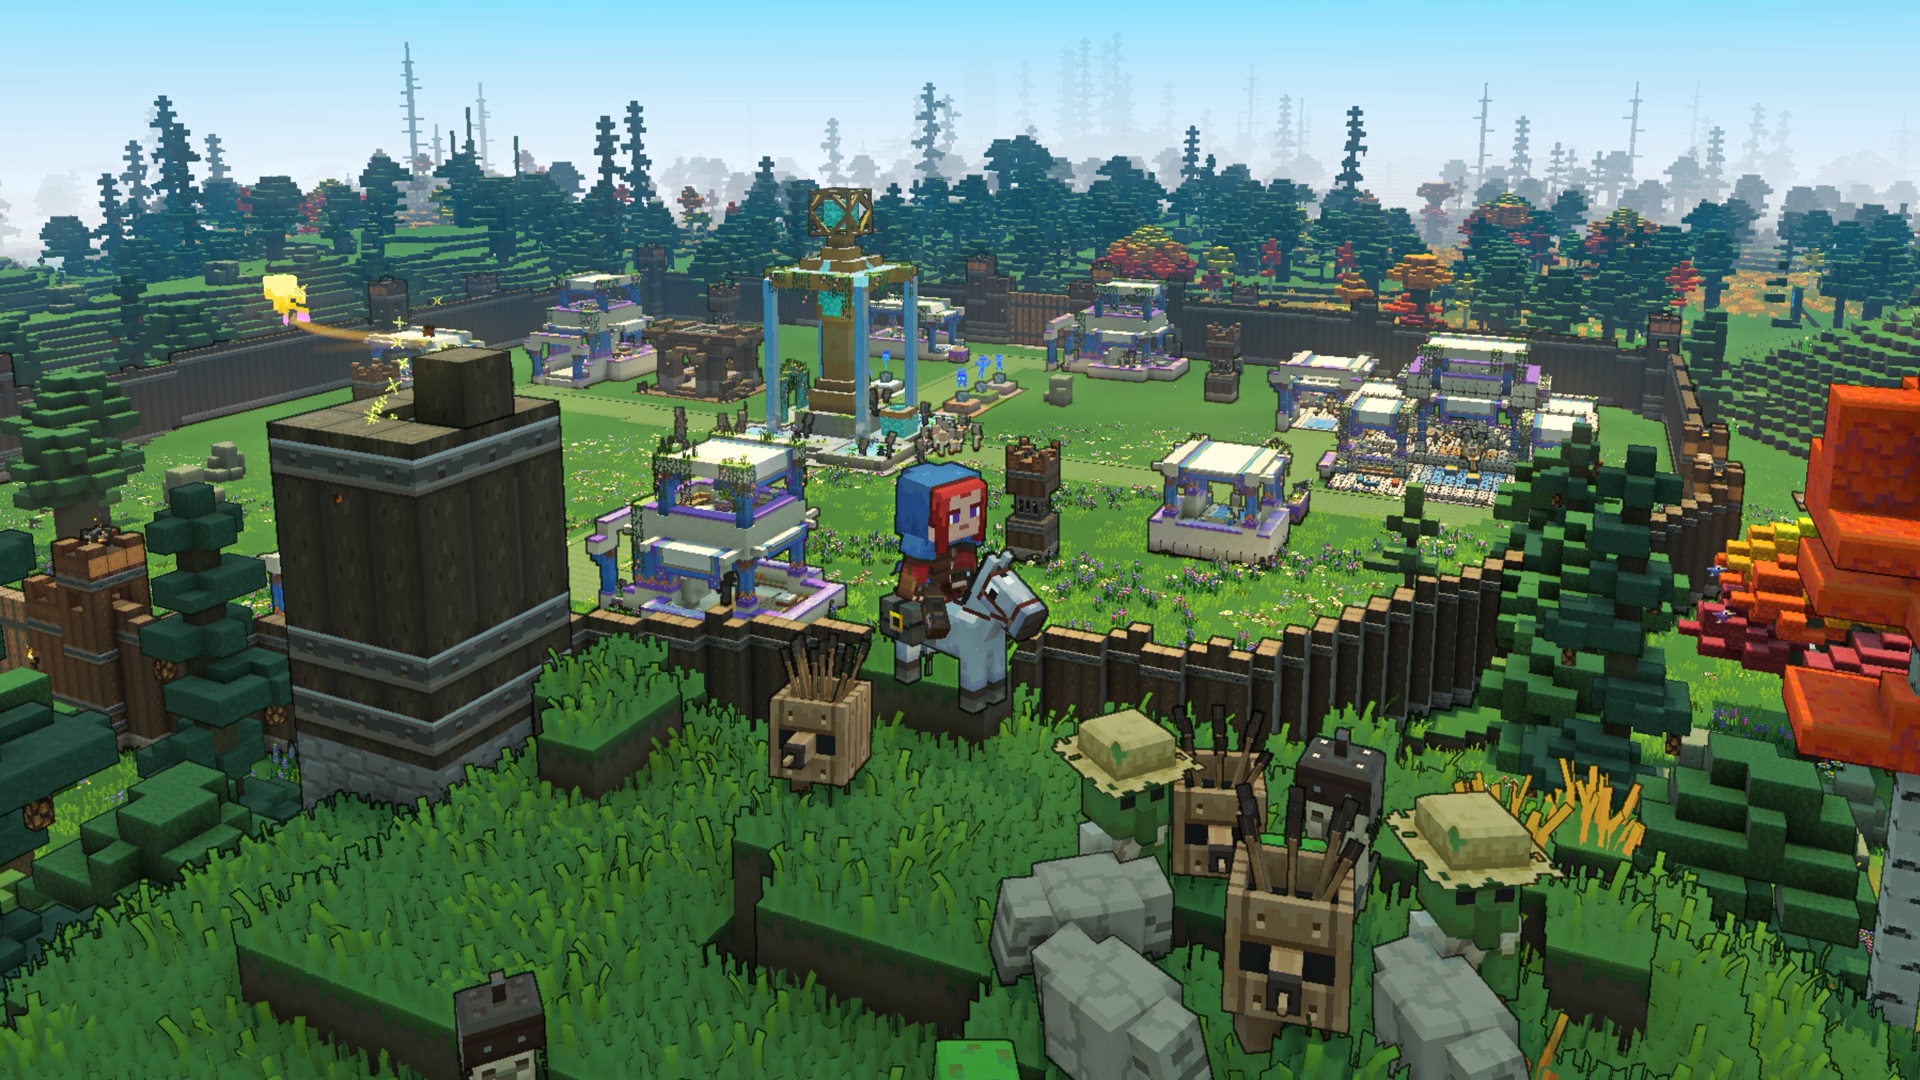 Le joueur de Minecraft Legends sur une monture se tient sur une colline herbeuse surplombant une base avec des murs en bois et plusieurs structures à l'intérieur.